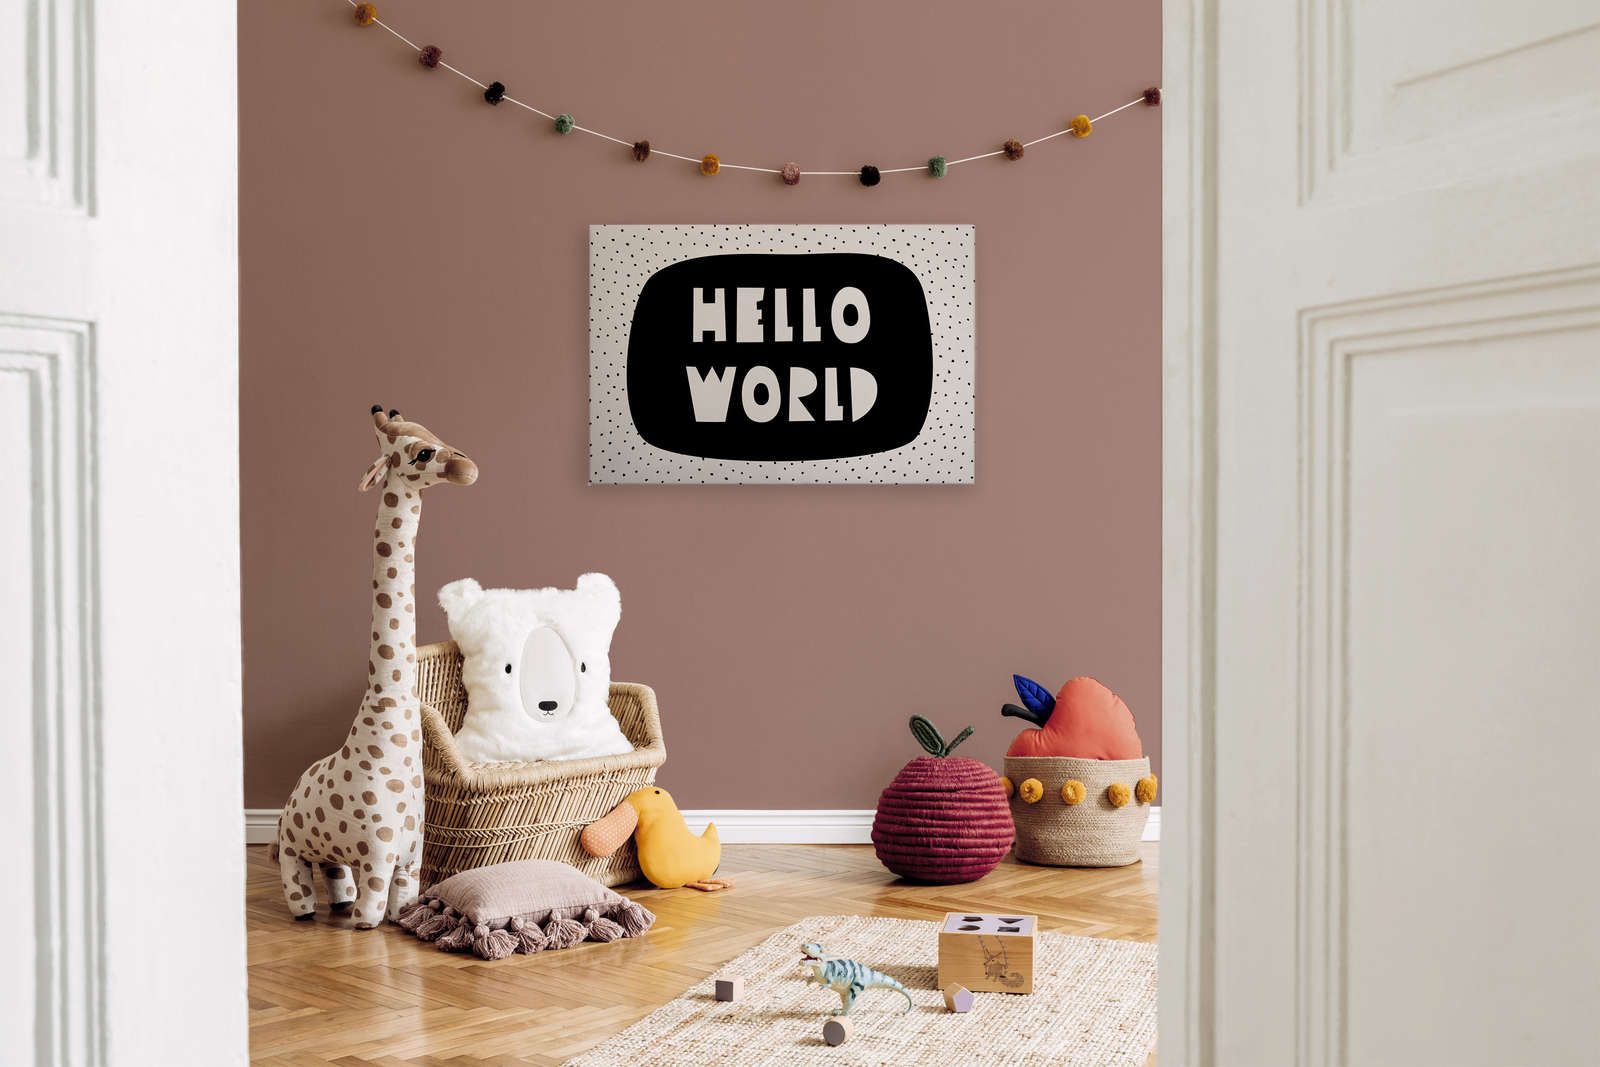             Leinwand fürs Kinderzimmer mit Schriftzug "Hello World" – 90 cm x 60 cm
        